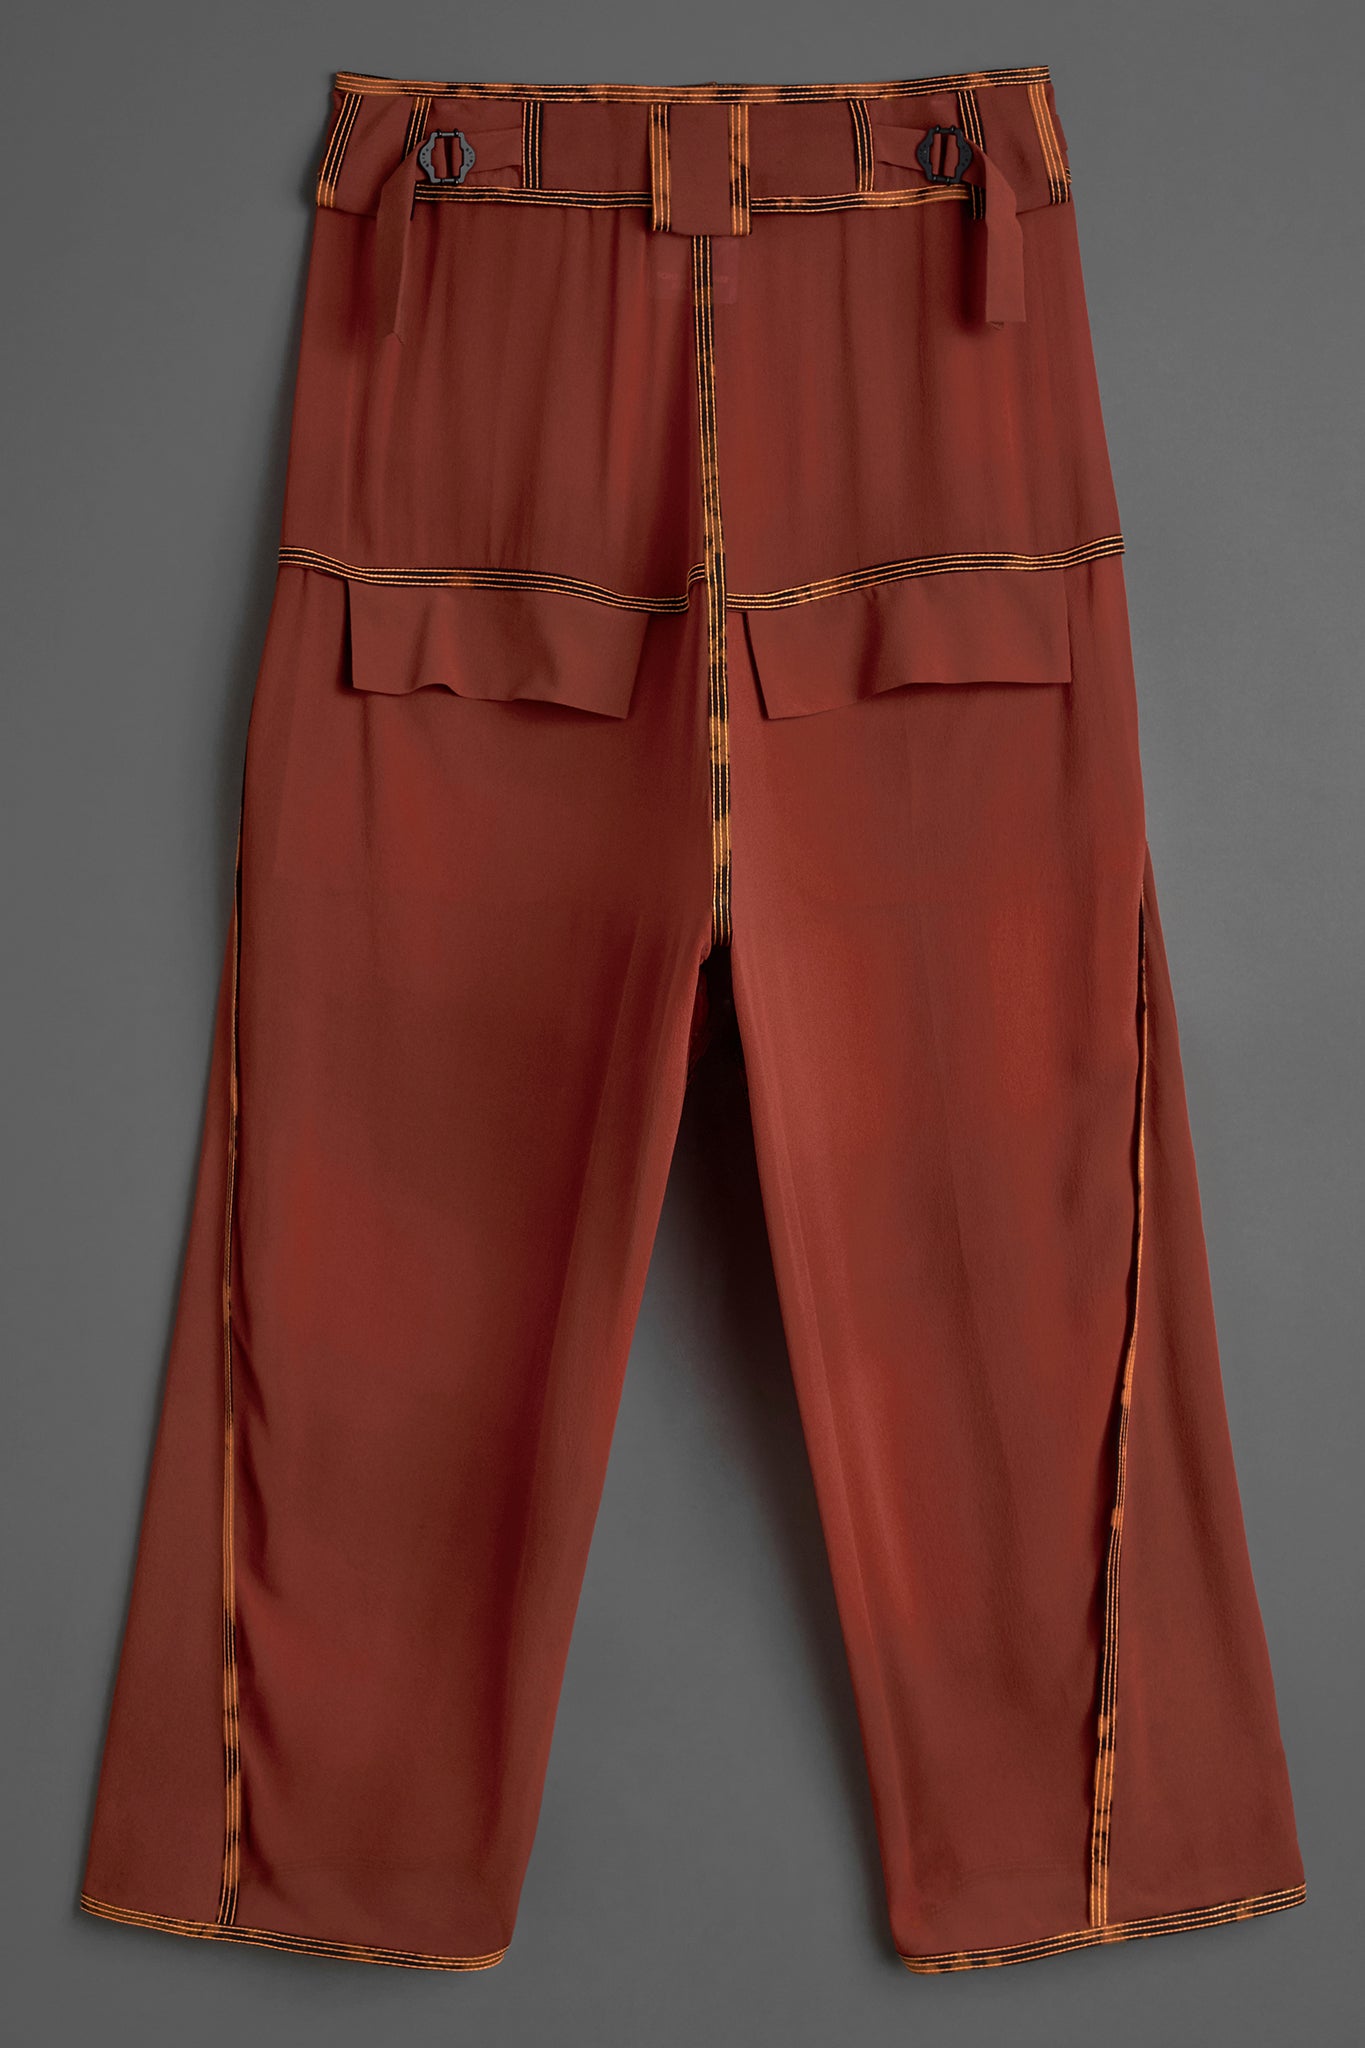 Silk Waistband Pants - Rust Red